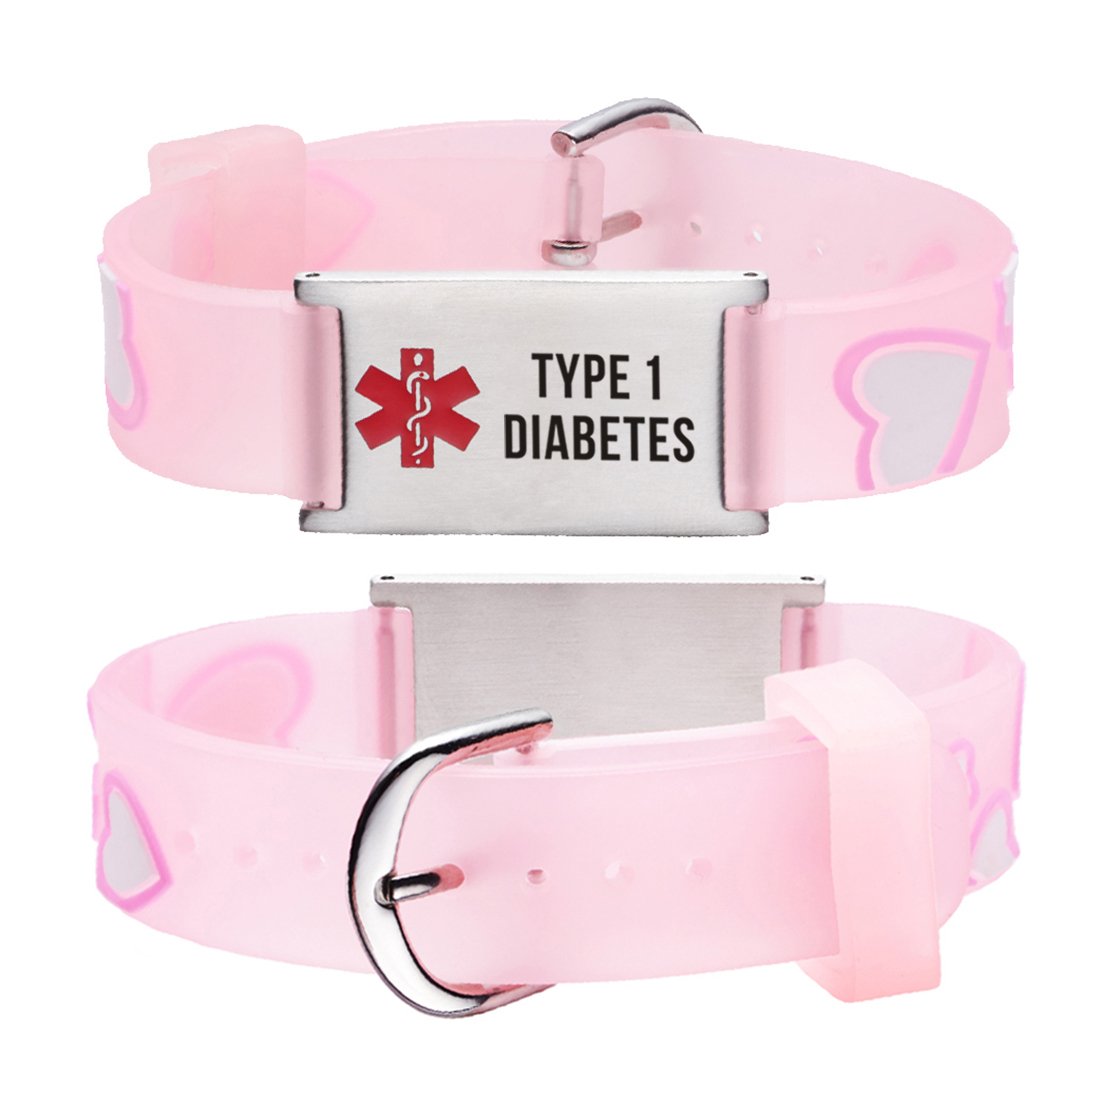 Type 1 Diabetes bracelets for kids-Pink Heart